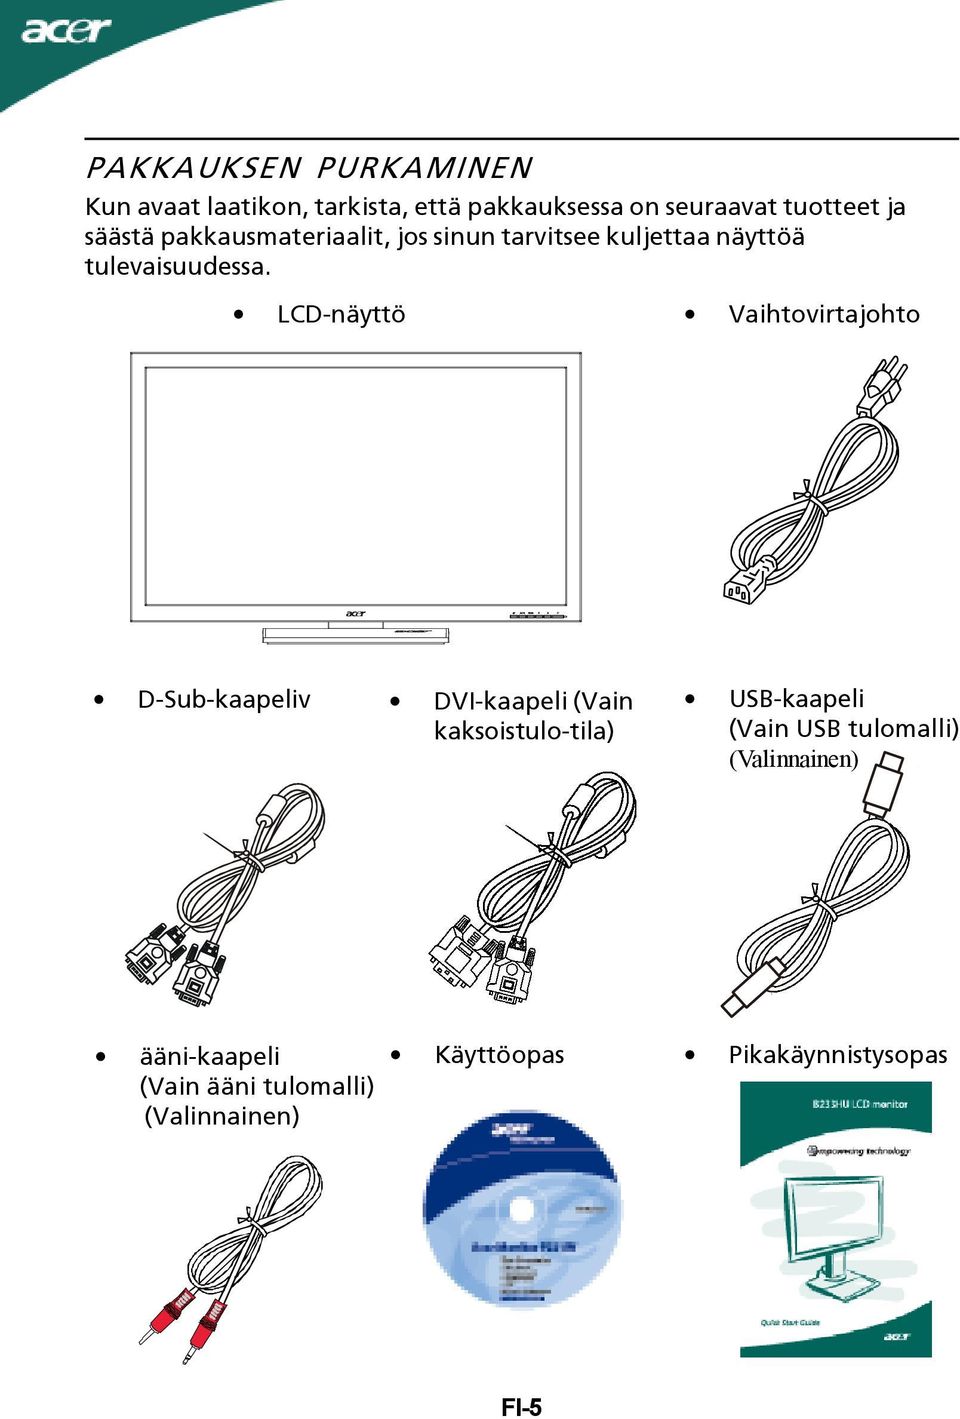 LCD-näyttö Vaihtovirtajohto D-Sub-kaapeliv DVI-kaapeli (Vain kaksoistulo-tila) USB-kaapeli (Vain